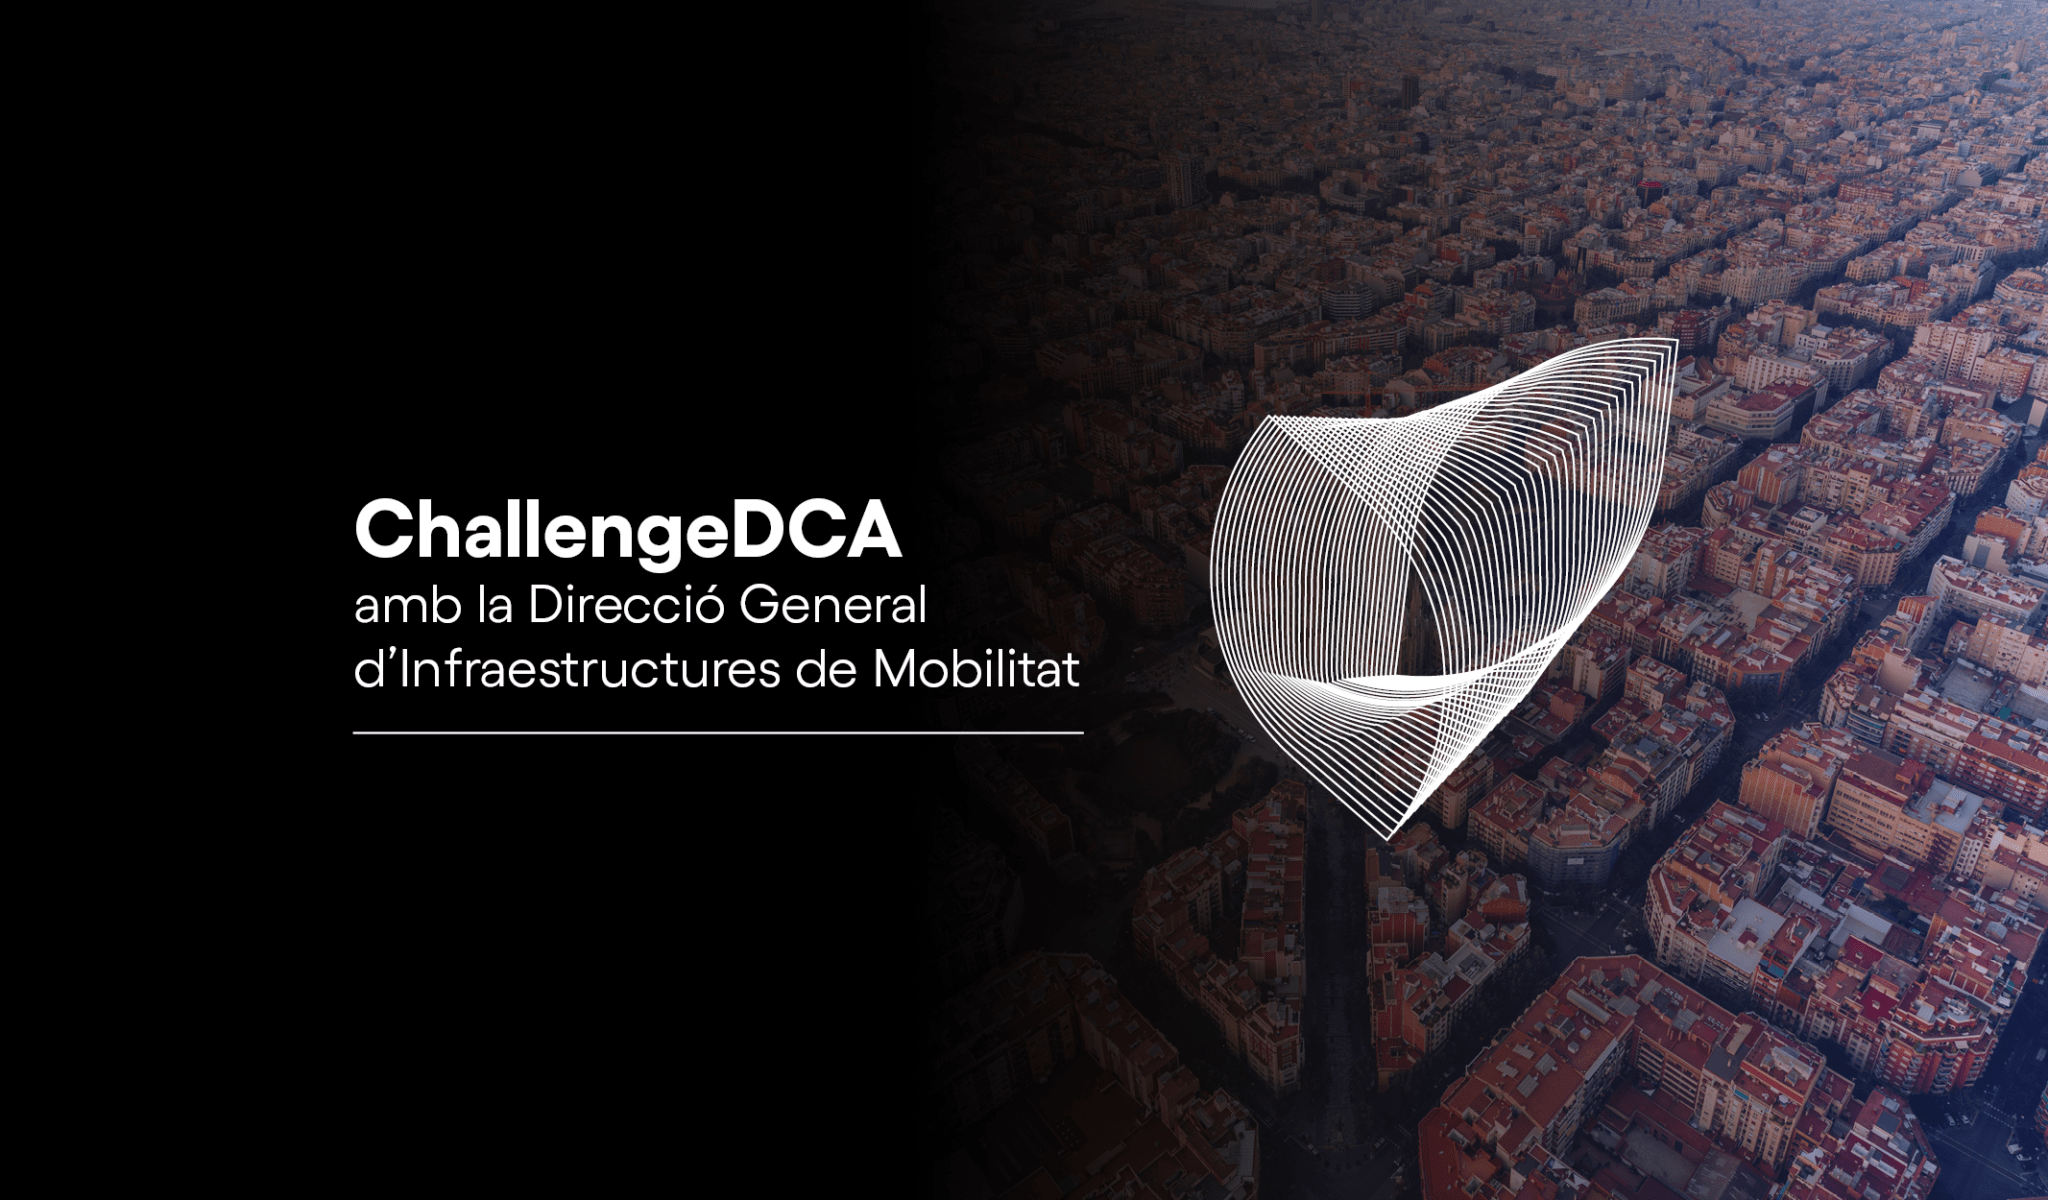 ChallengeDCA con la Dirección General de Infraestructuras de Movilidad (DGIM)